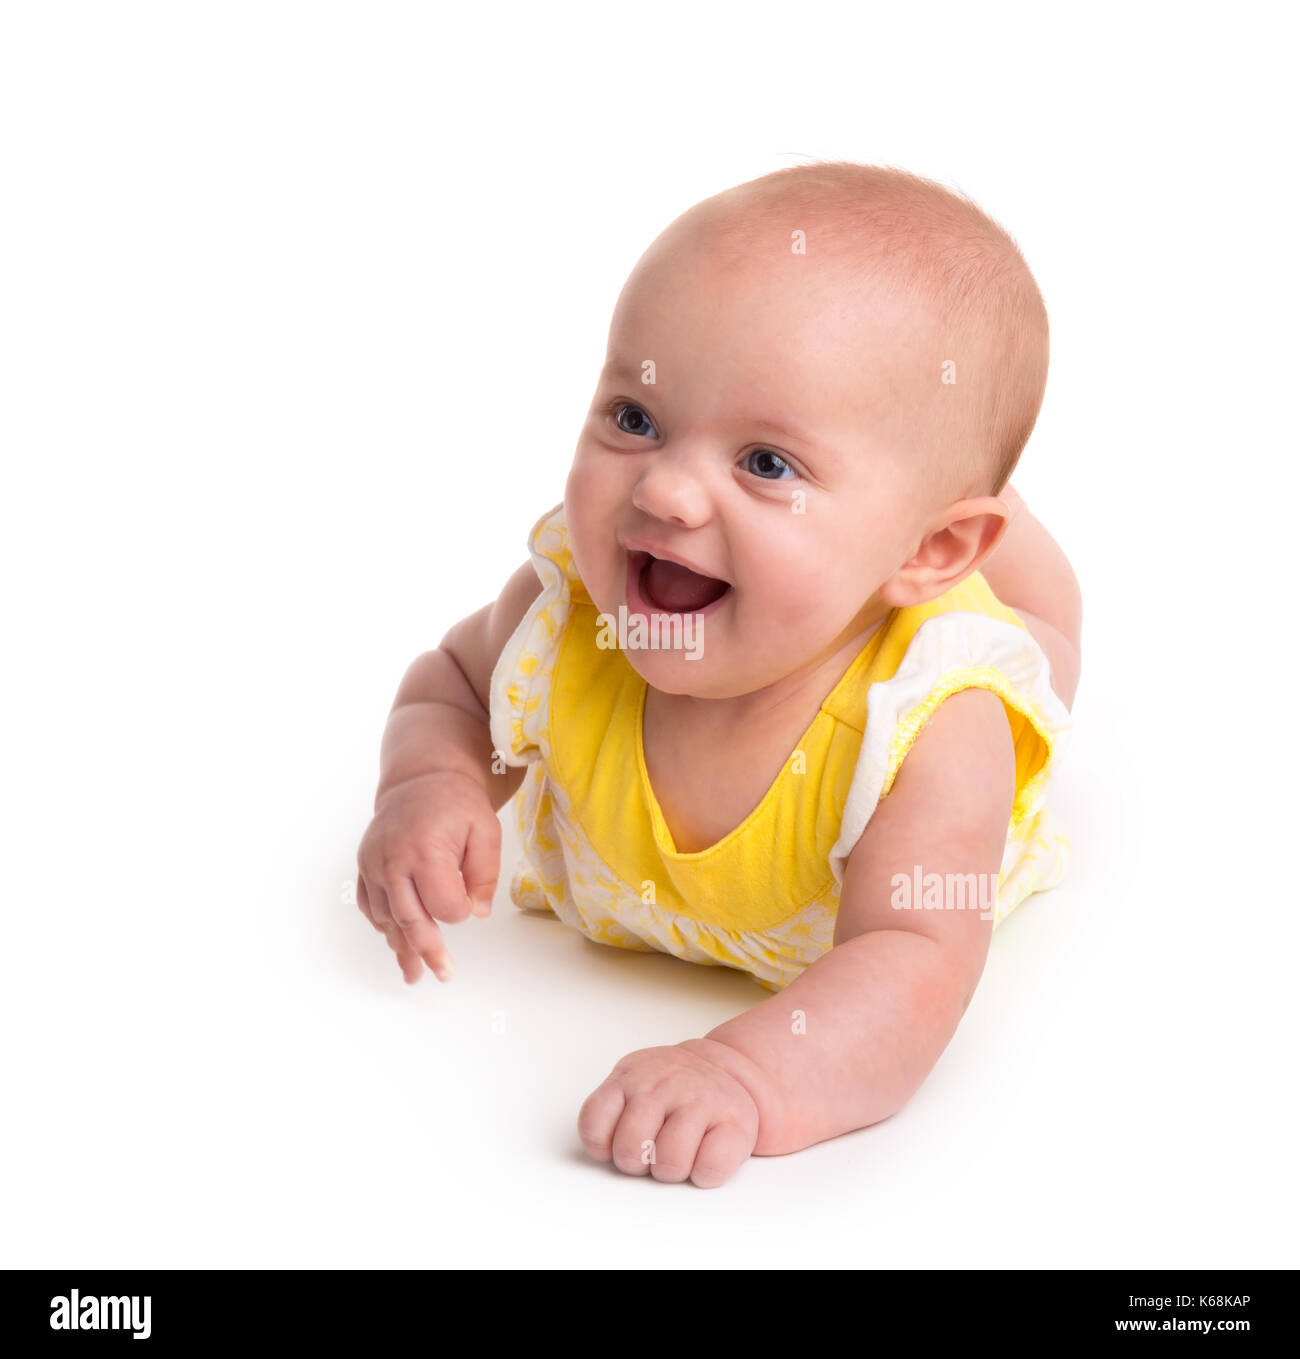 Lindo Bebé sonriendo aislado sobre fondo blanco. Foto de stock